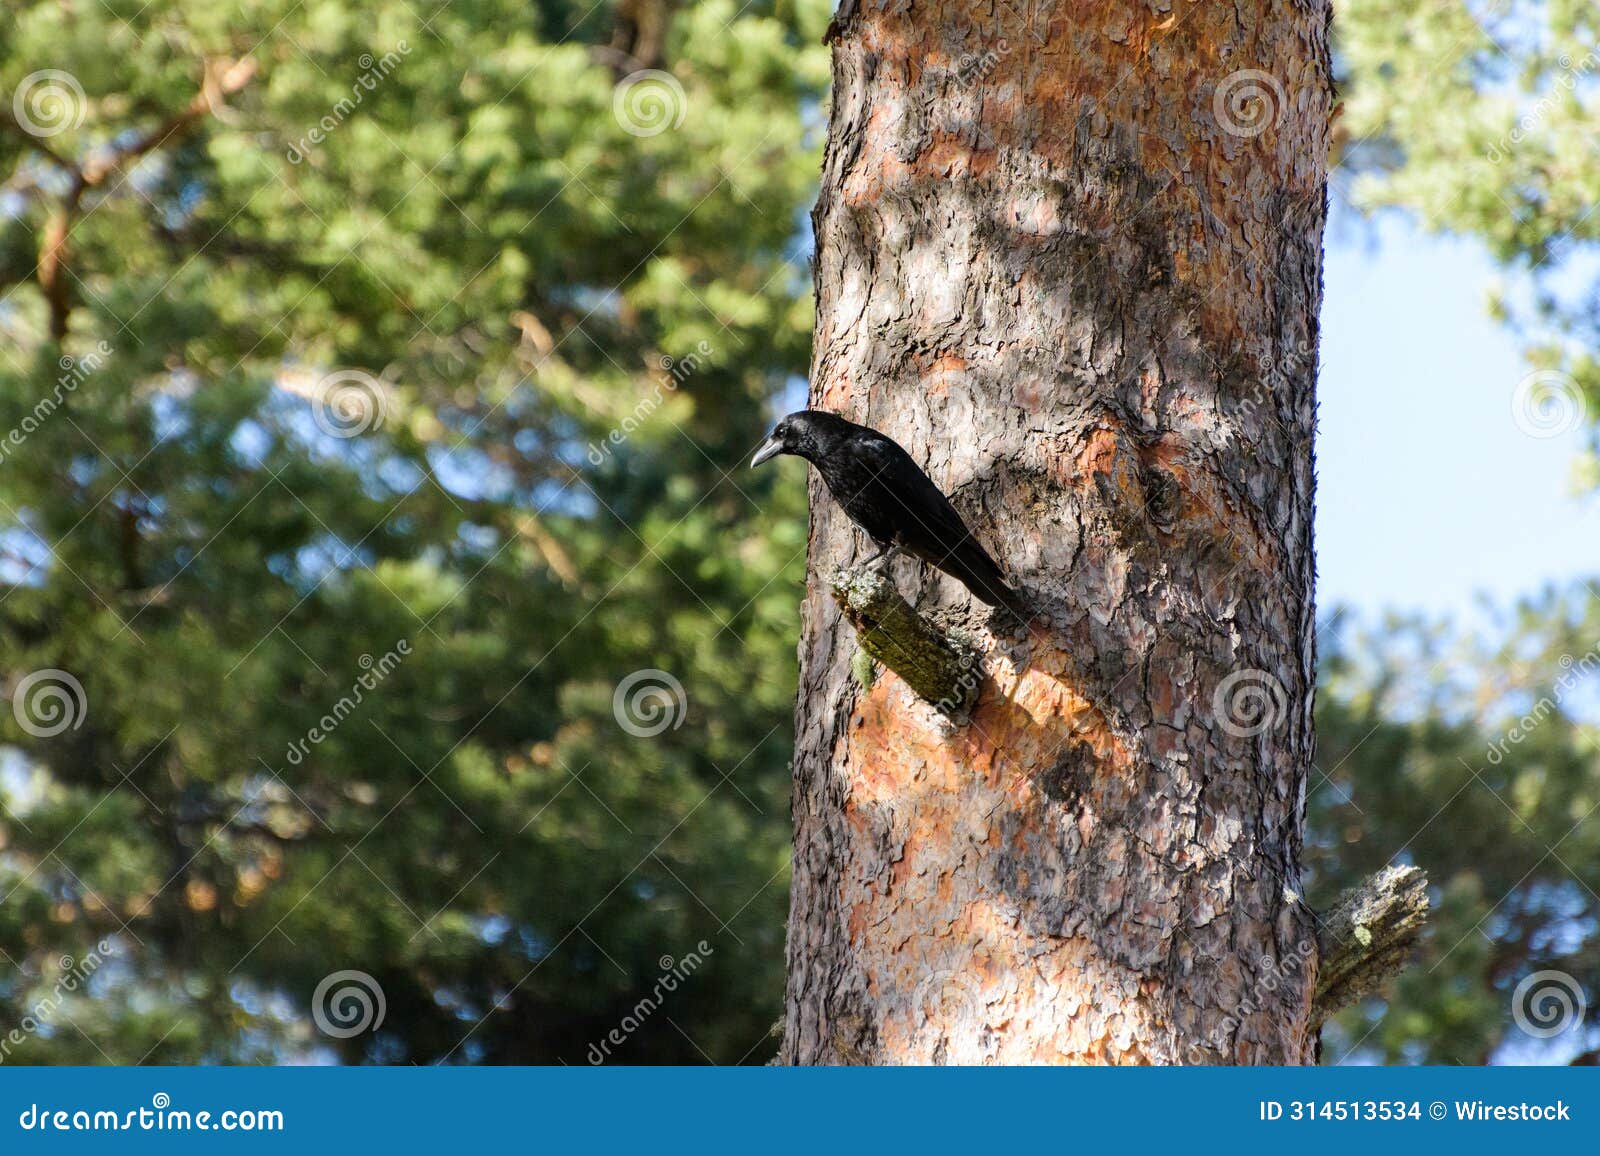 crow in the bosque de valsain, parque nacional de la sierra de guadarama